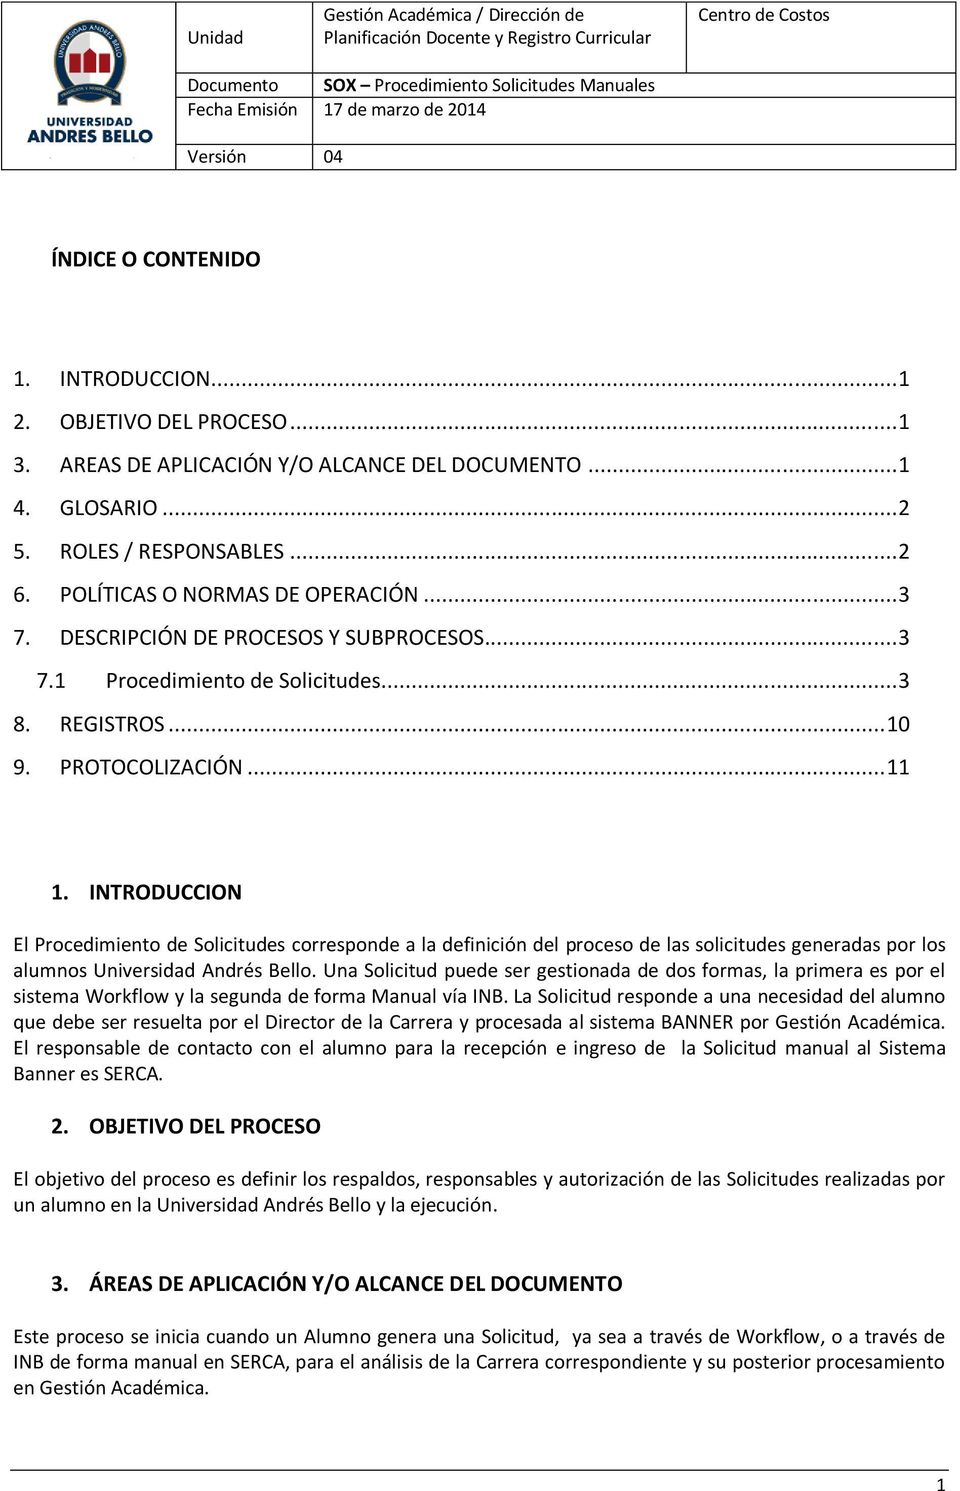 INTRODUCCION El Procedimiento de Solicitudes corresponde a la definición del proceso de las solicitudes generadas por los alumnos Universidad Andrés Bello.